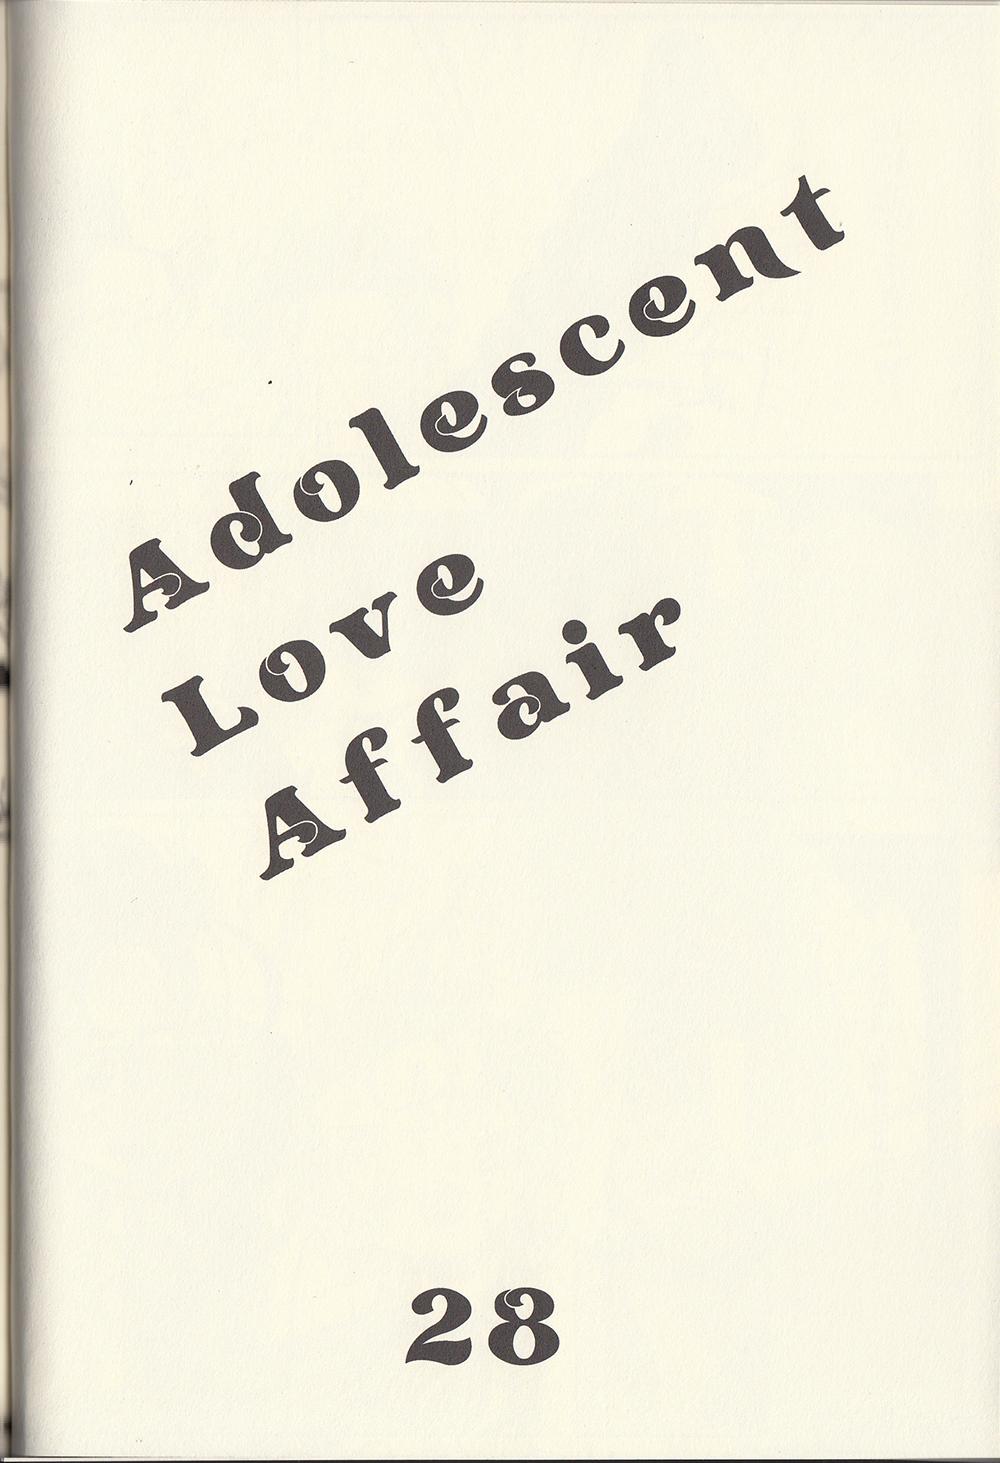 Adolescent Love Affair 9